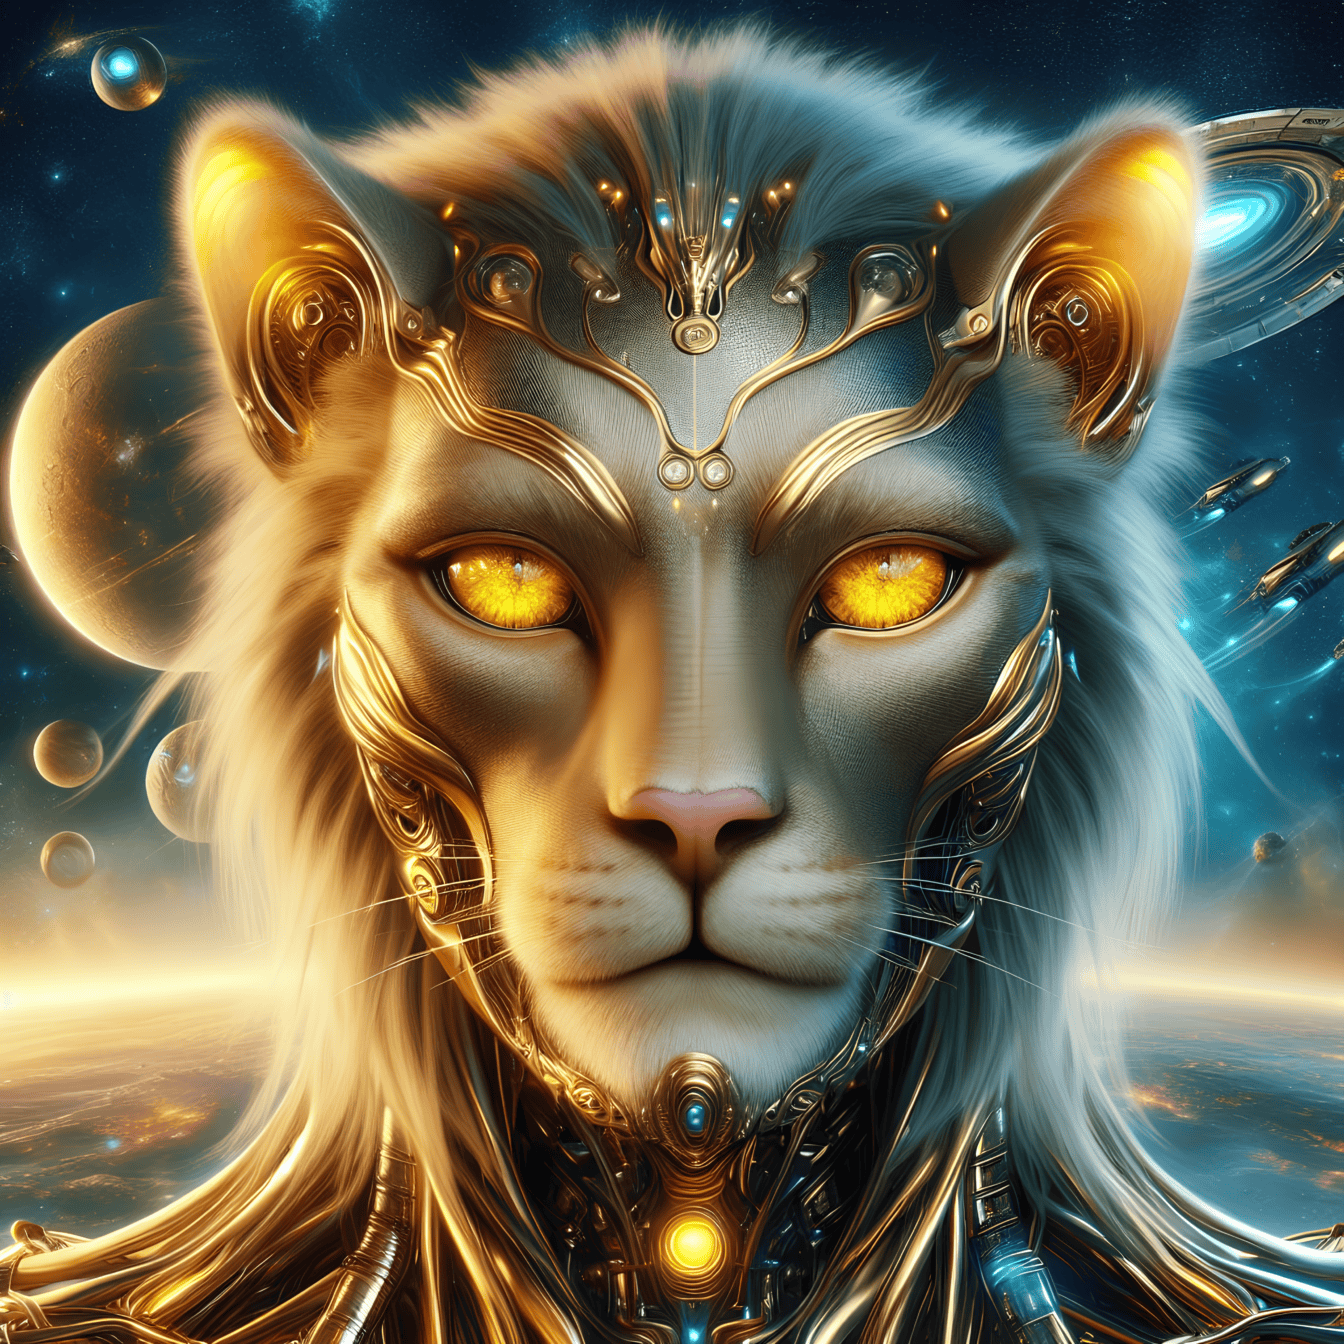 Egy arany istenség, egy földönkívüli oroszlán-kiborg portréja egy másik bolygóról